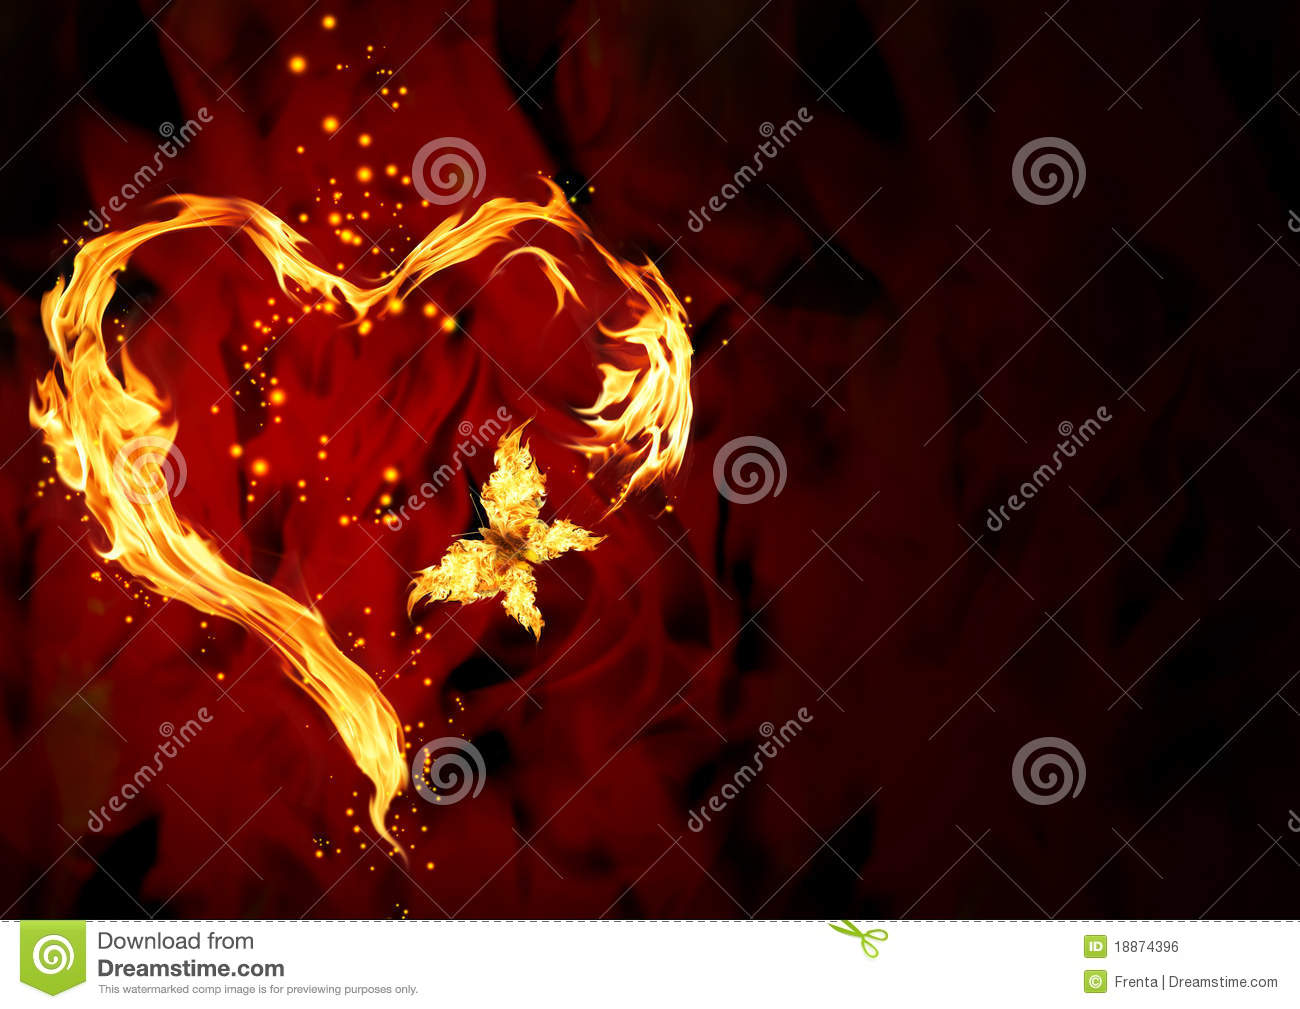 Burning Heart Royalty Free Stock Image   Image  18874396